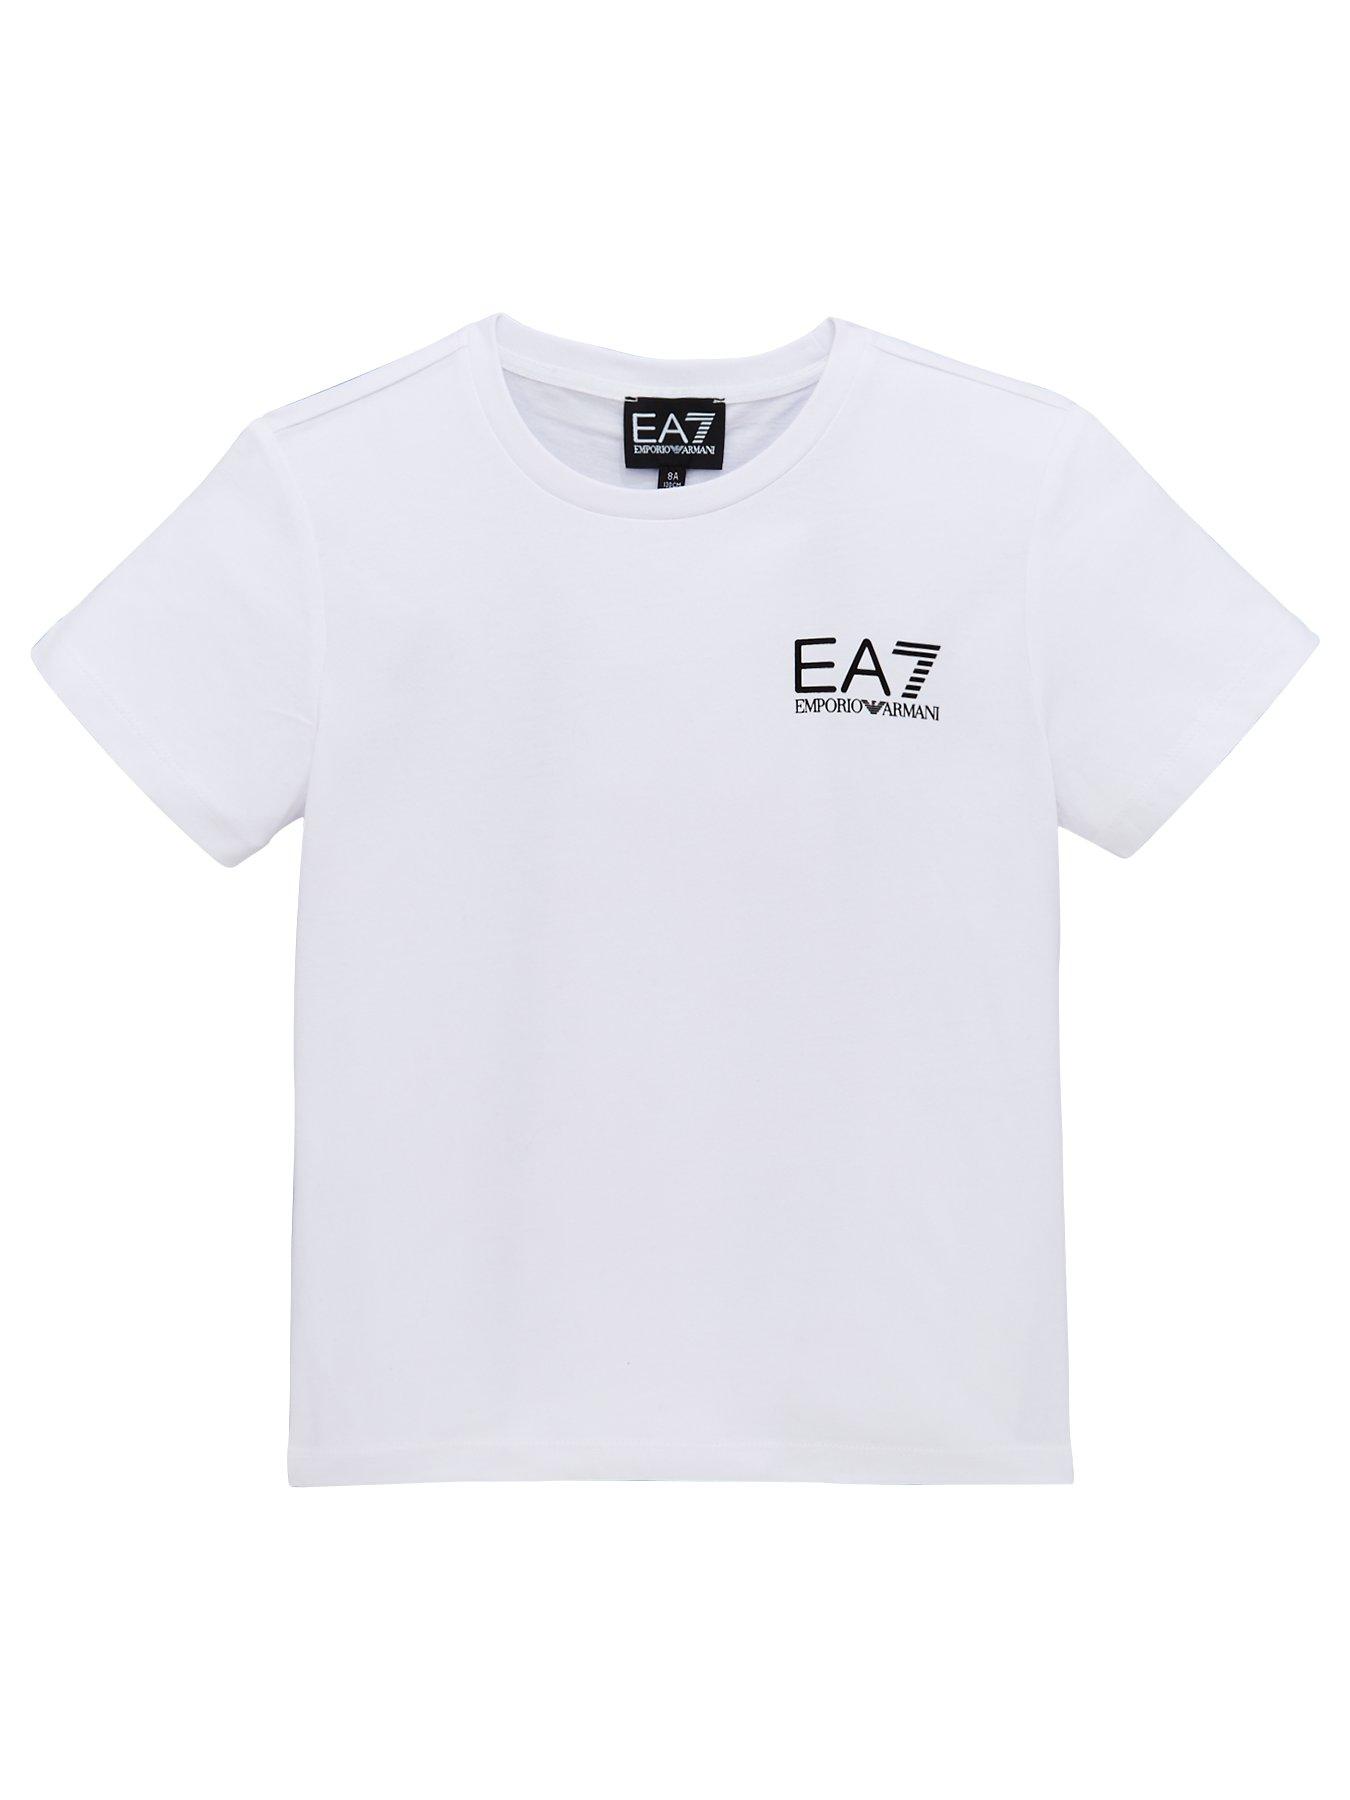 ea7 clothes